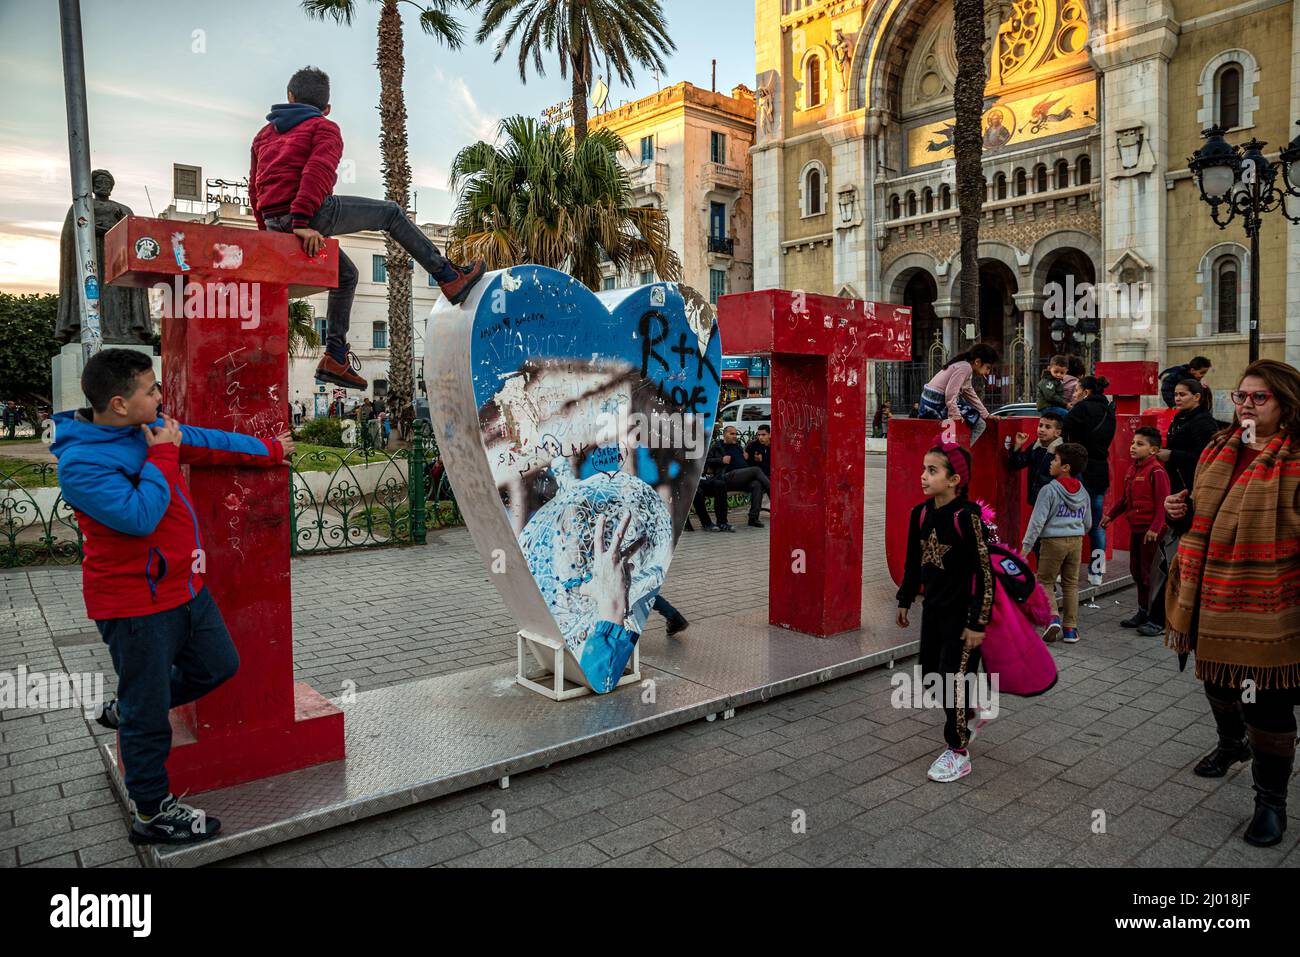 Les enfants grimpent et jouent sur le panneau « J'aime Tunis » en face de la cathédrale Saint-Vincent-de-Paul, Tunis, Tunisie Banque D'Images